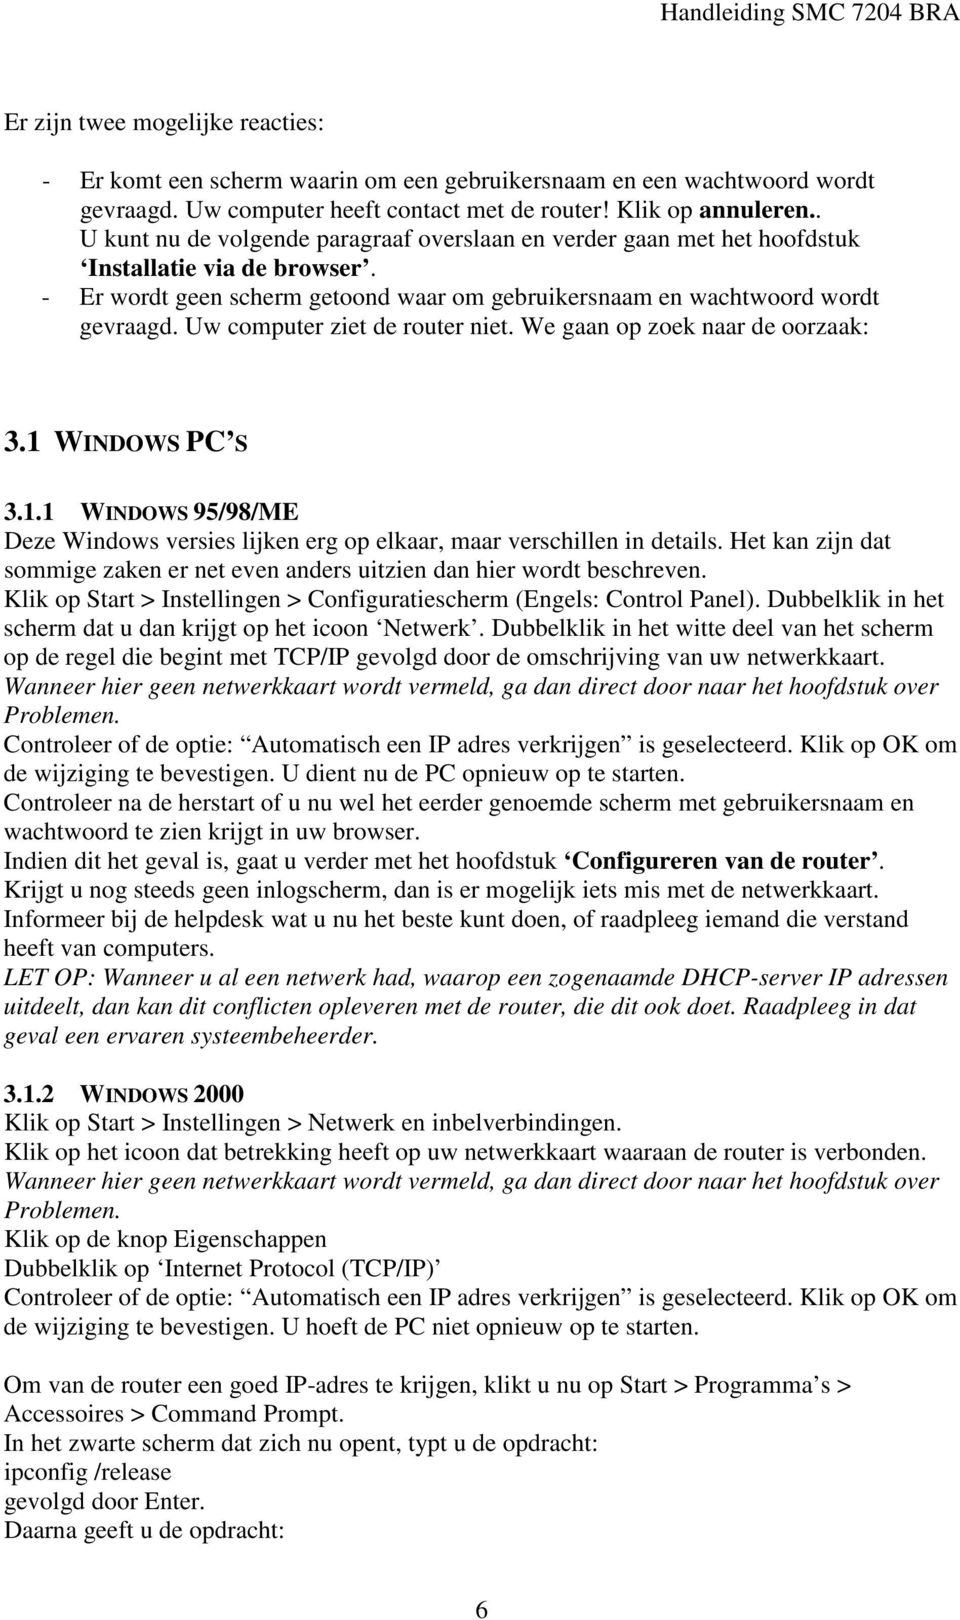 Uw computer ziet de router niet. We gaan op zoek naar de oorzaak: 3.1 WINDOWS PC S 3.1.1 WINDOWS 95/98/ME Deze Windows versies lijken erg op elkaar, maar verschillen in details.